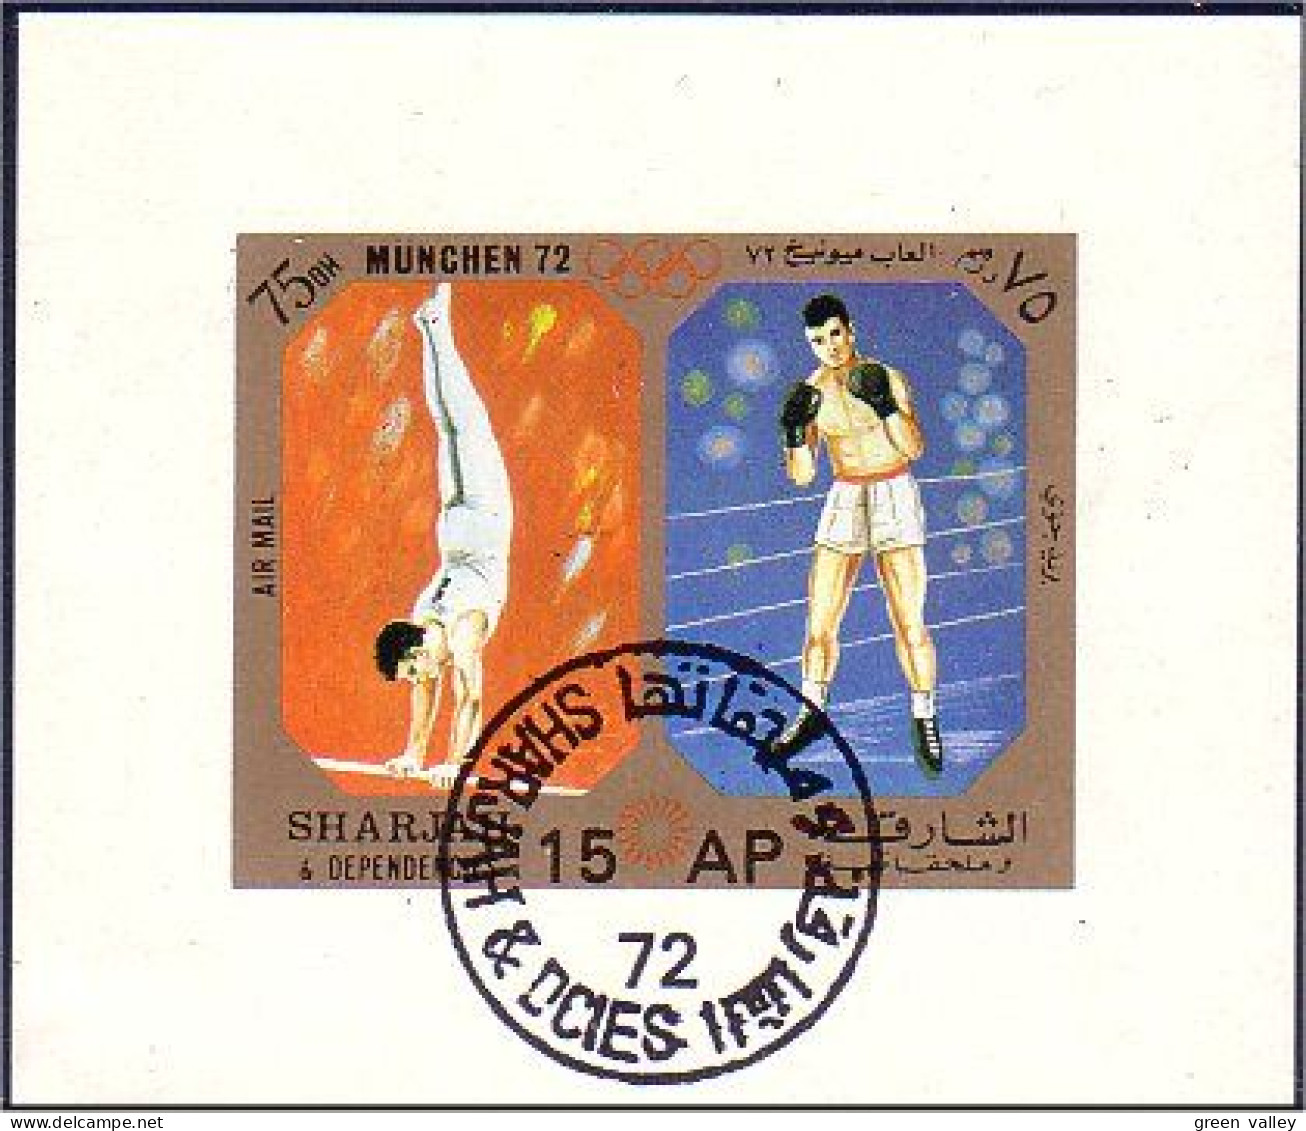 804 Sharjah Boxe Et Gymnastique Bloc Feuillet Souvenir Sheet (SHA-2) - Boxe